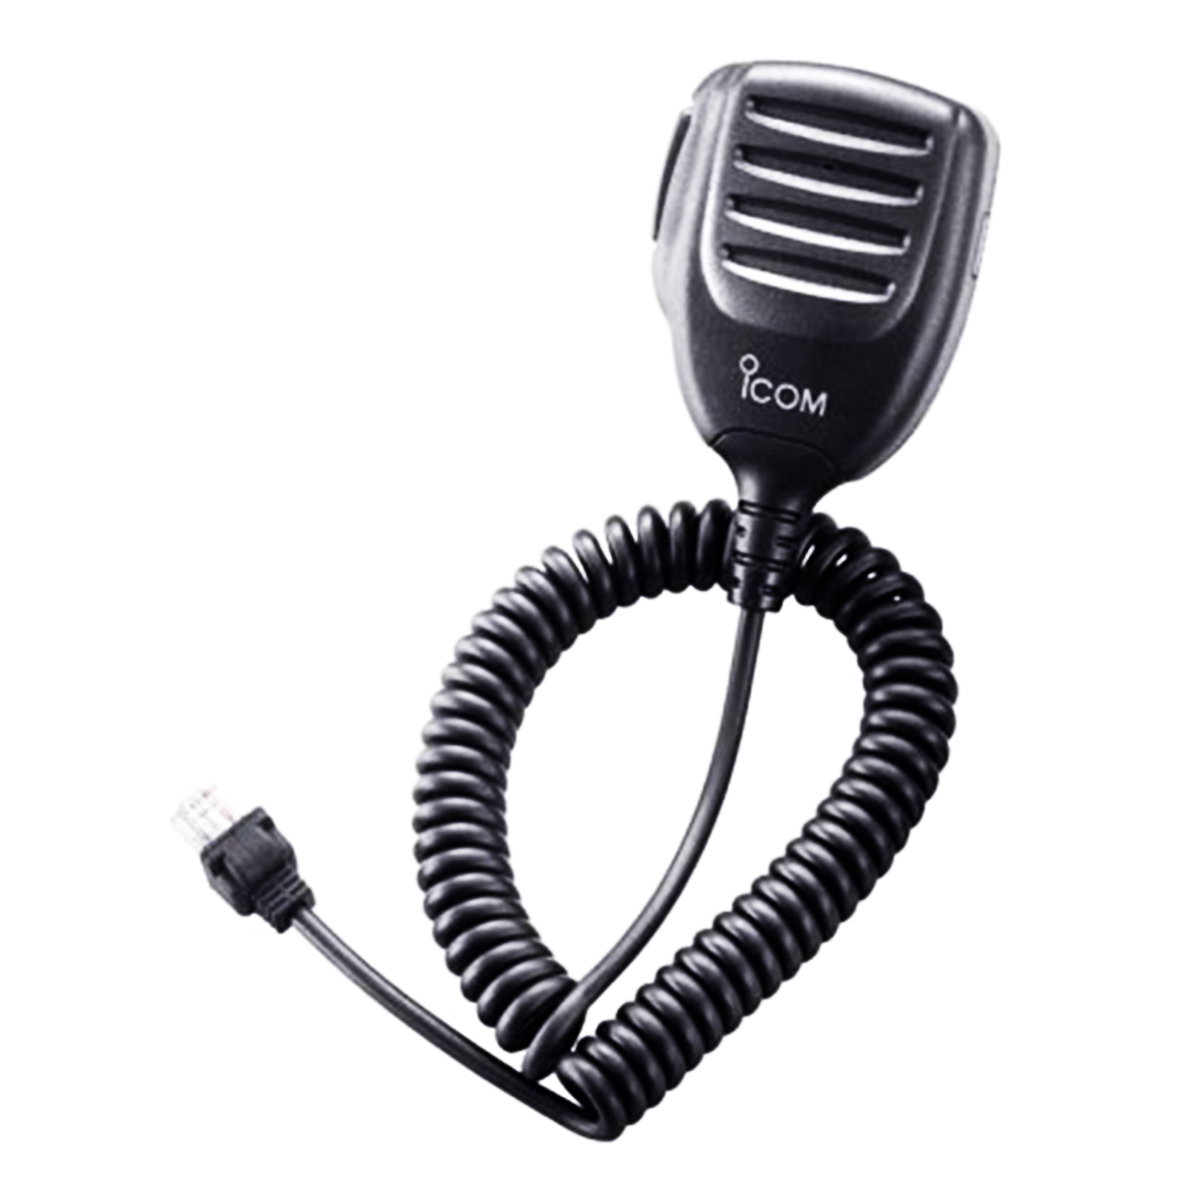 Micrófono Icom HM-152 para radio móvil